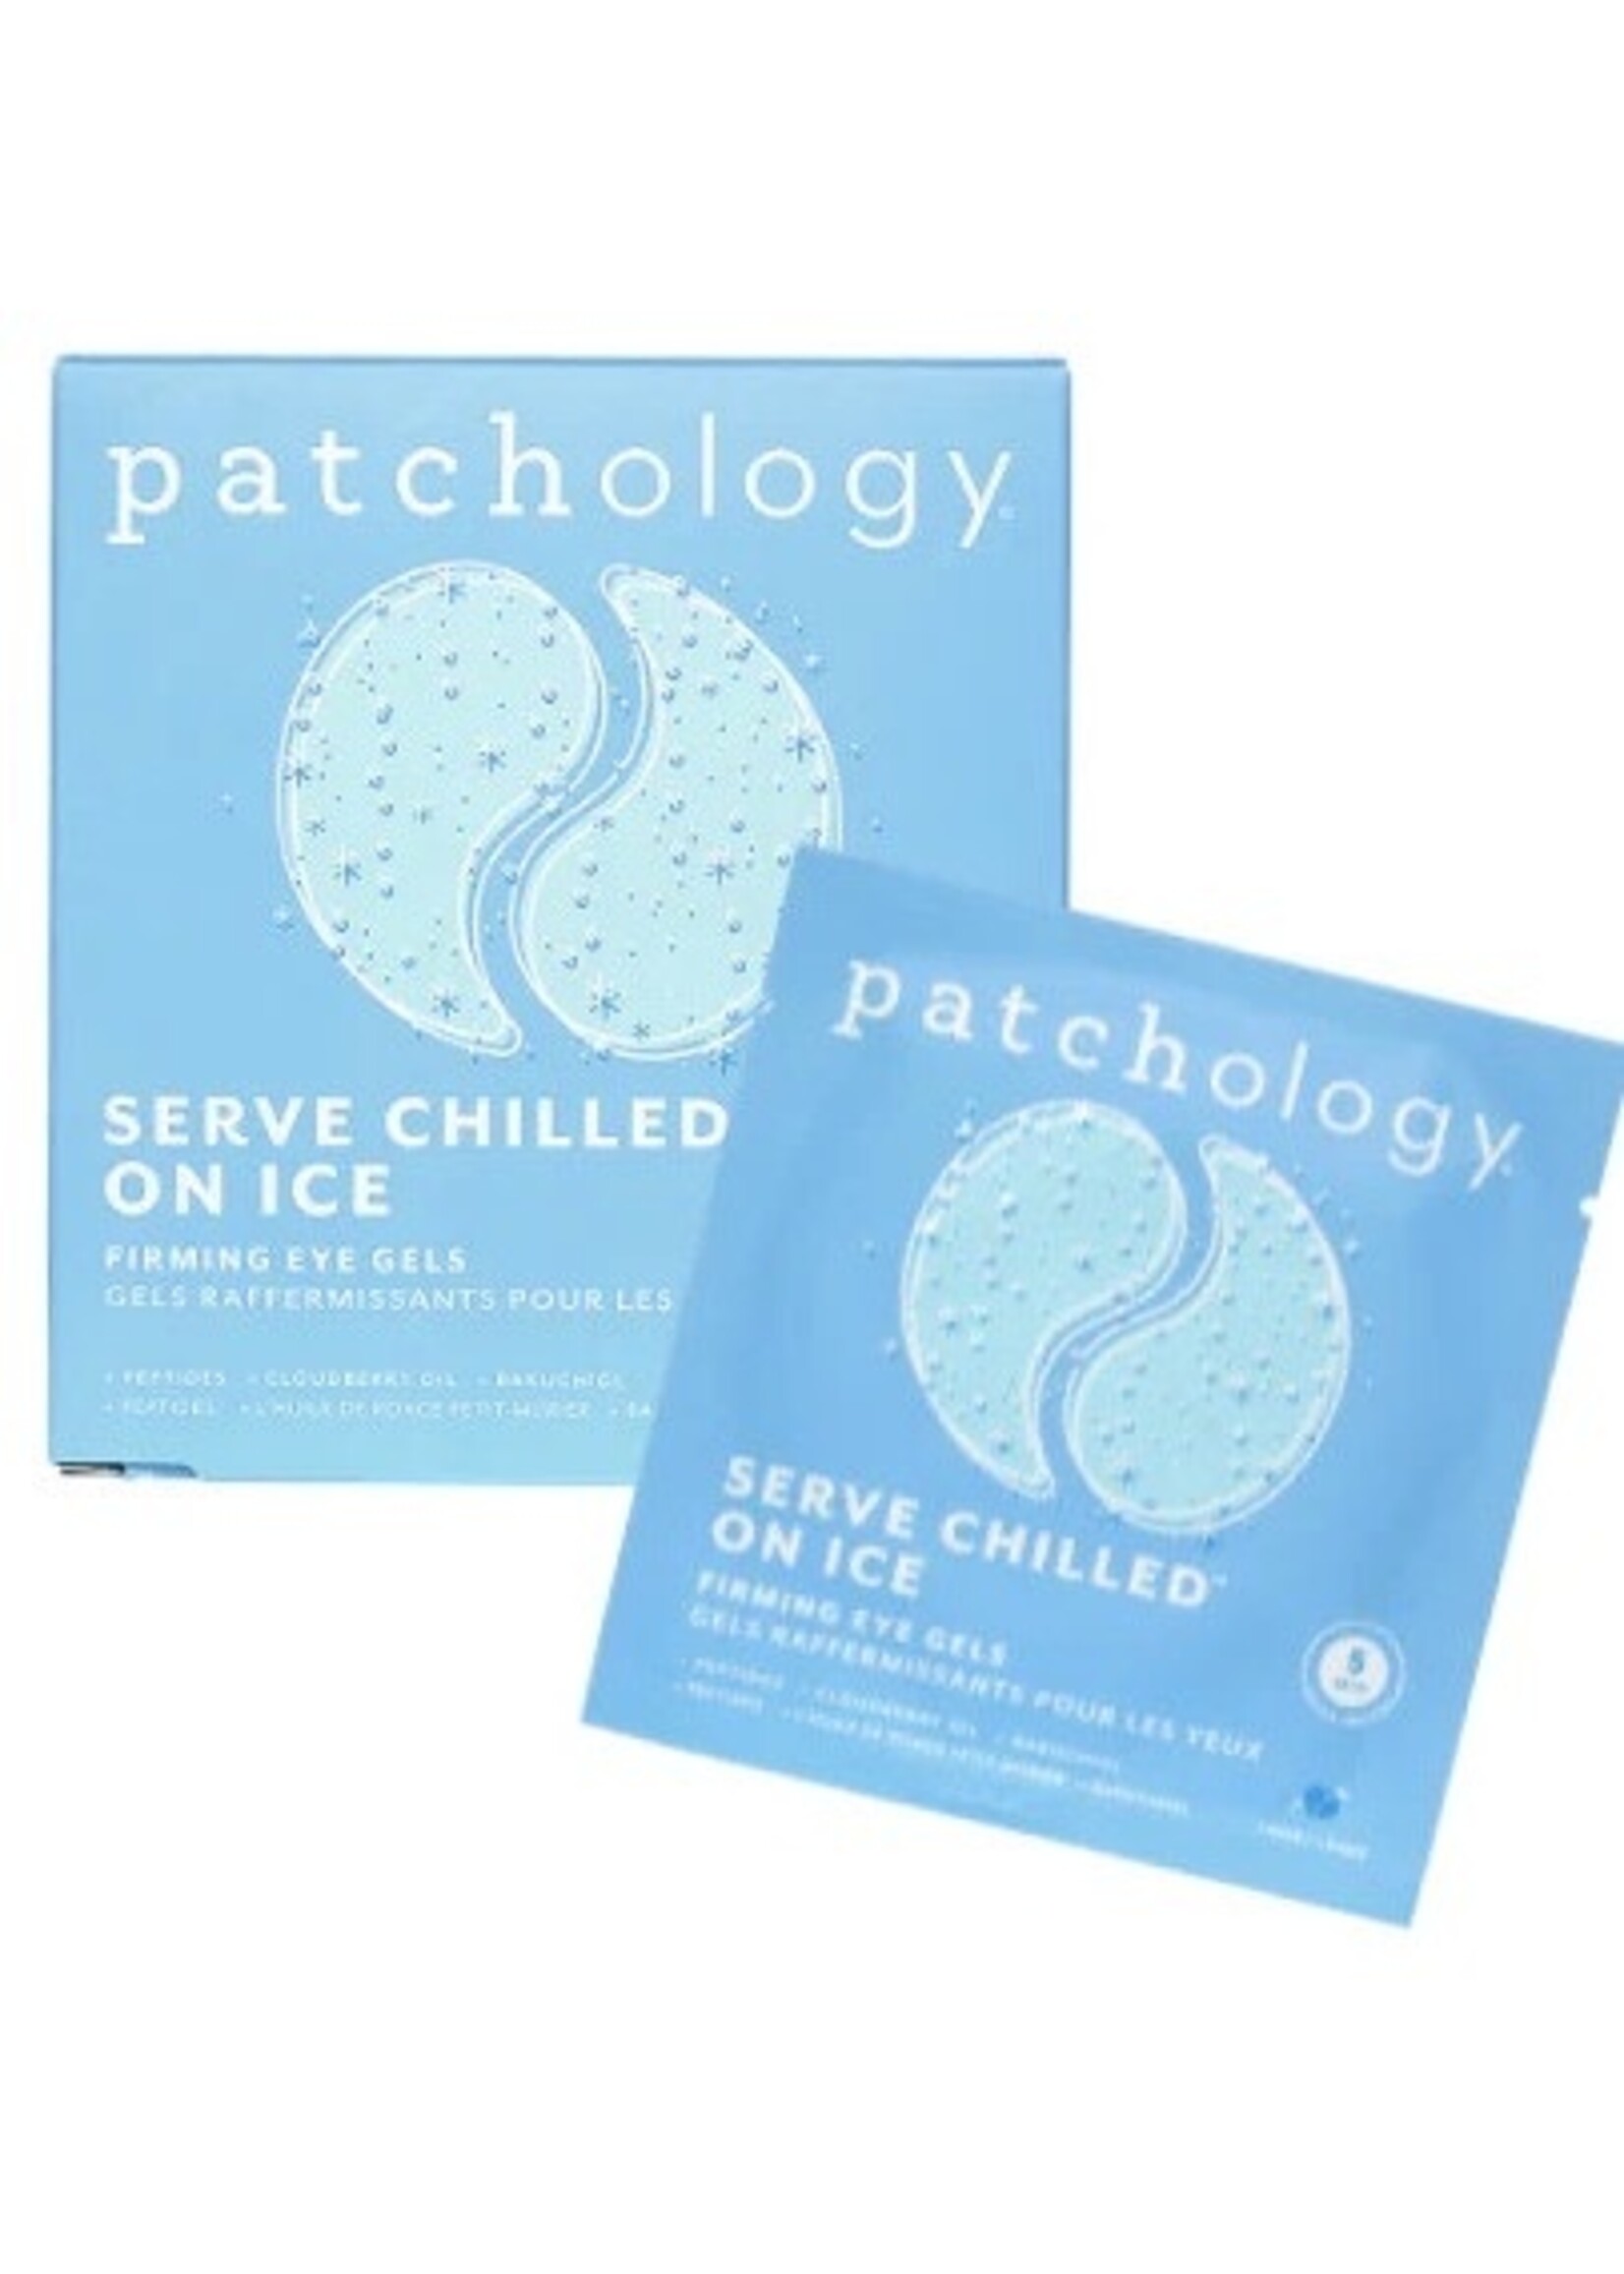 Patchology Eye Masks 5 Pack by Patchology